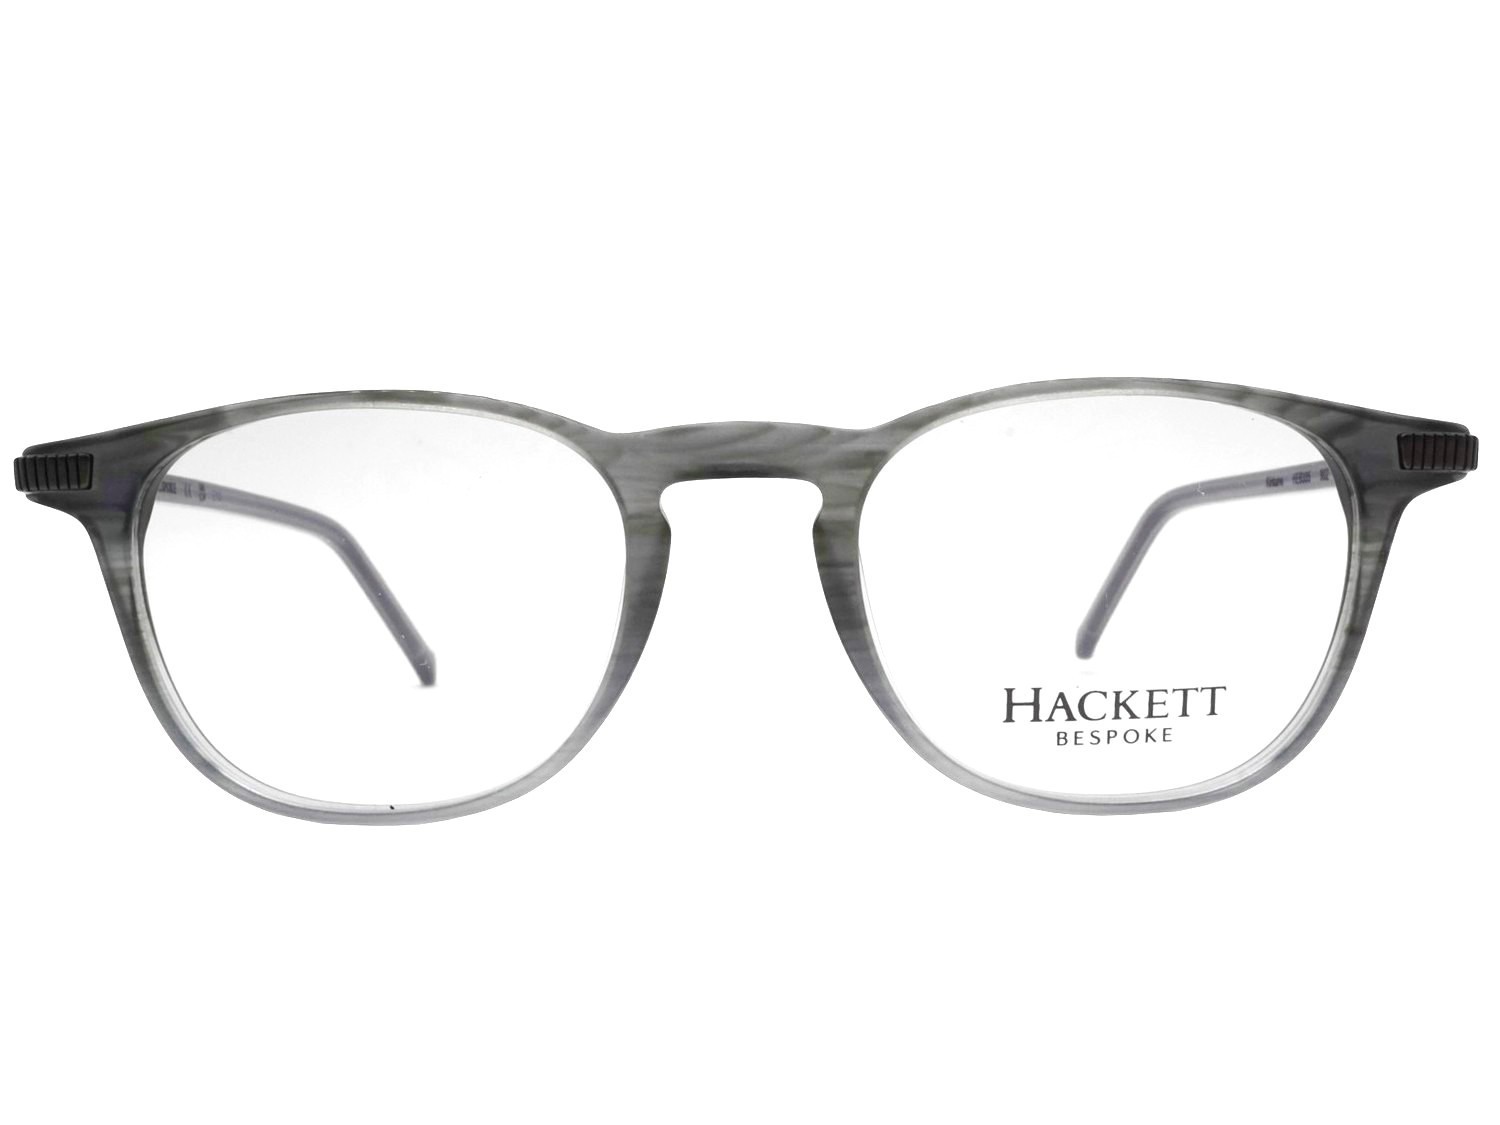 Hackett 335 902 bespoke